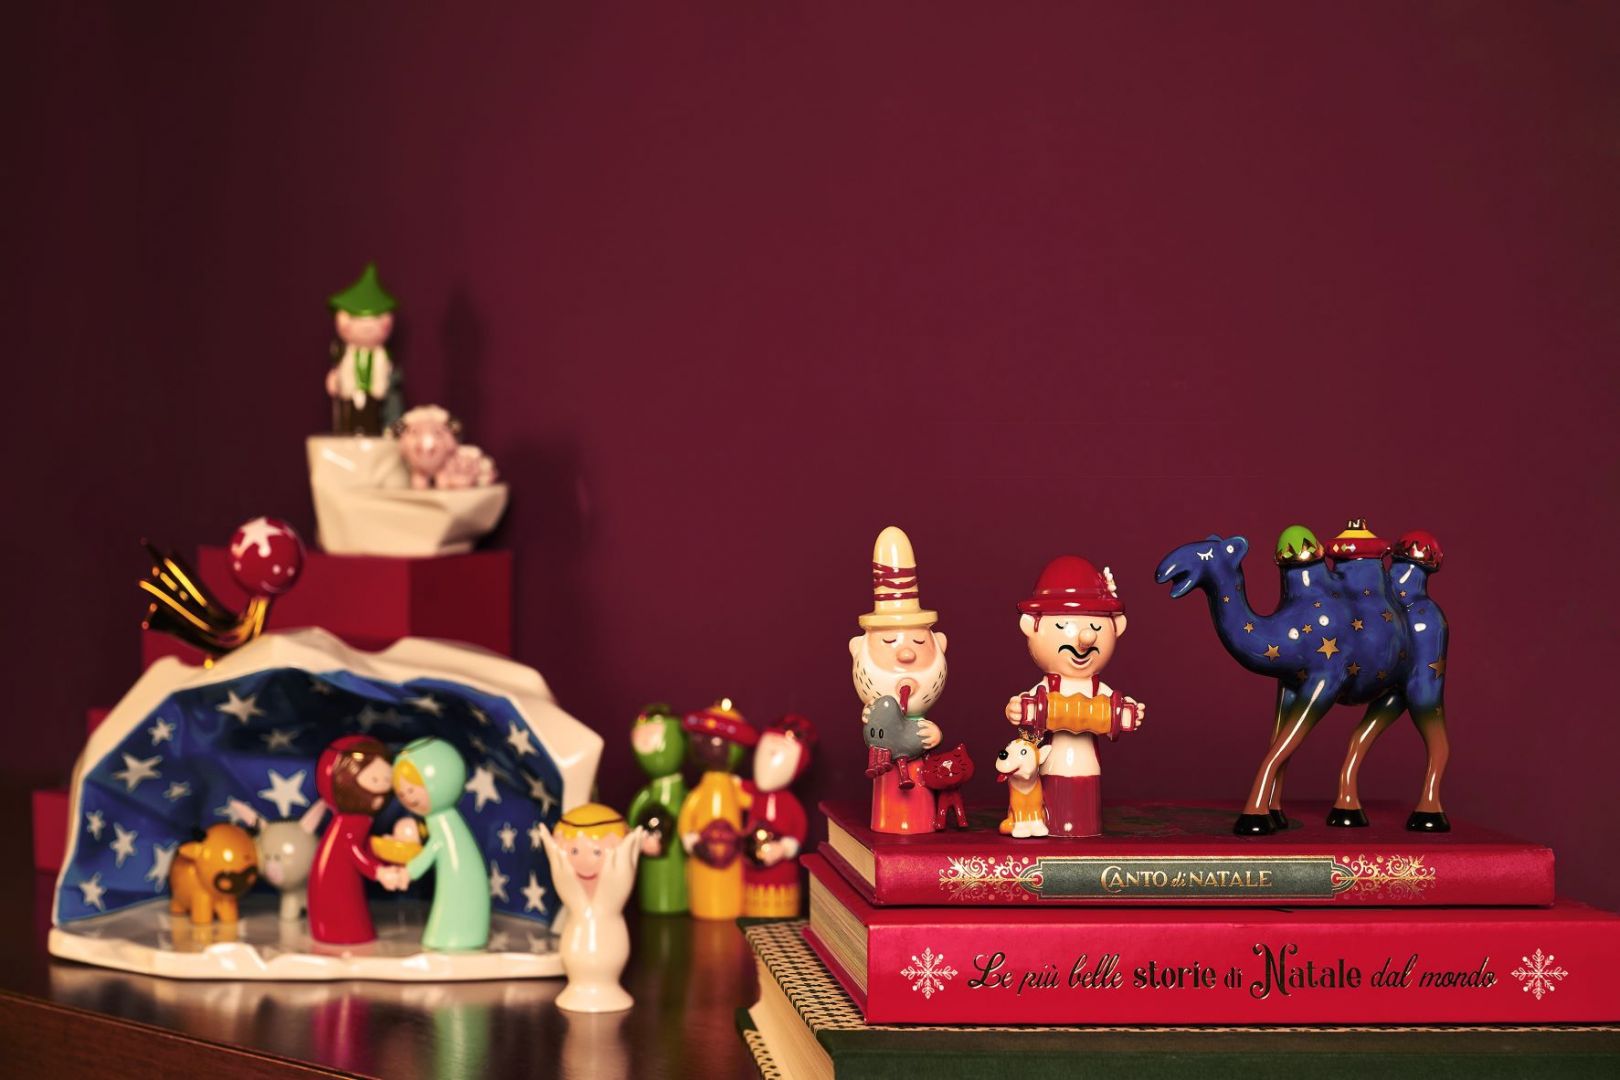 Najnowsza, świąteczne kolekcja ozdób i dekoracji firmy Alessi.  Fot. Alessi